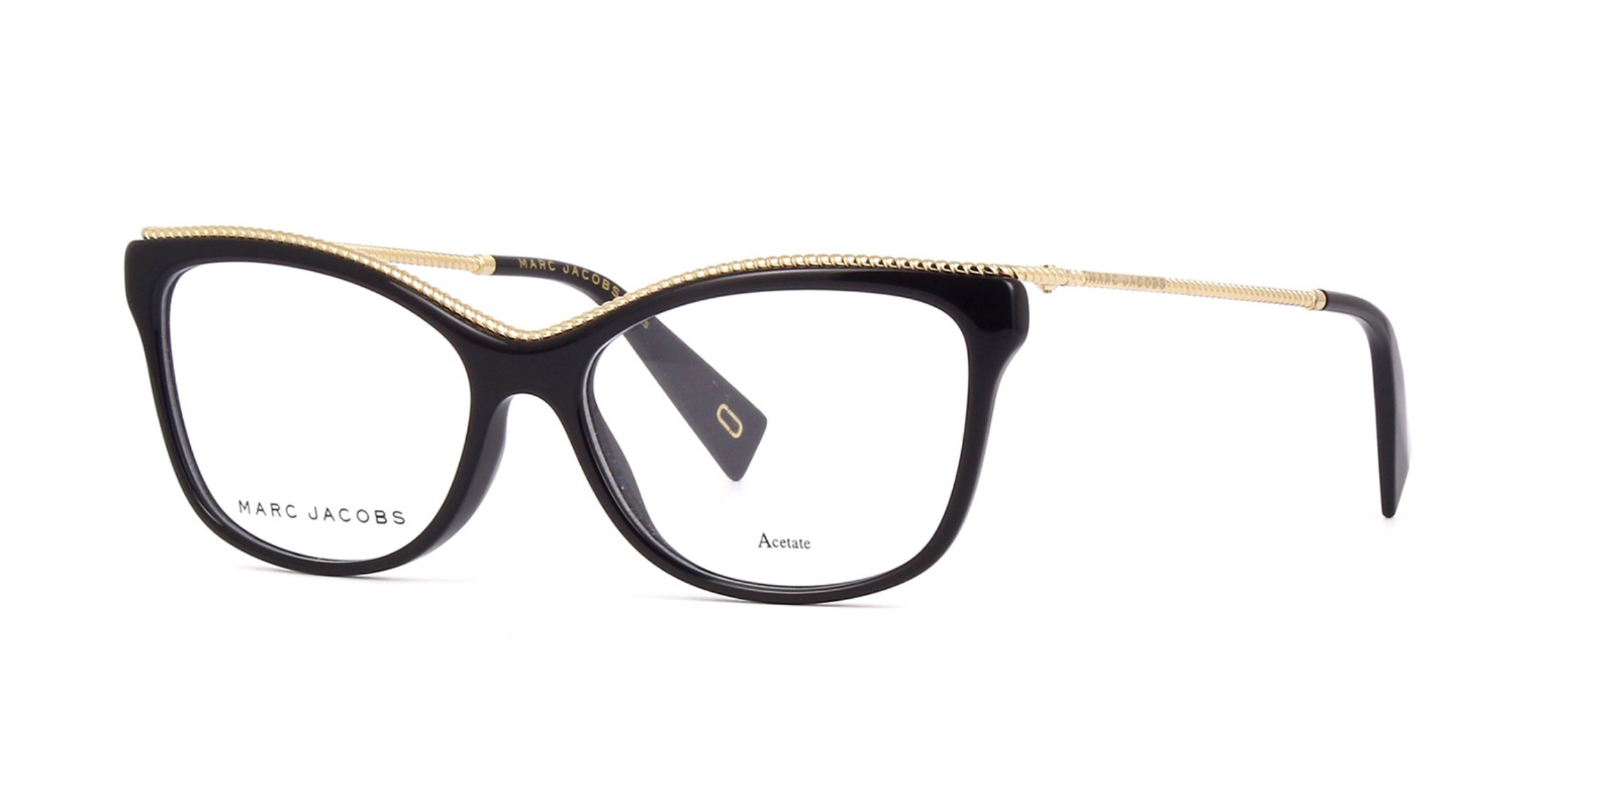 Marc Jacobs Marc 167 807 Eyeglasses Black Gold Frame 55mm - Eyeglass Frames